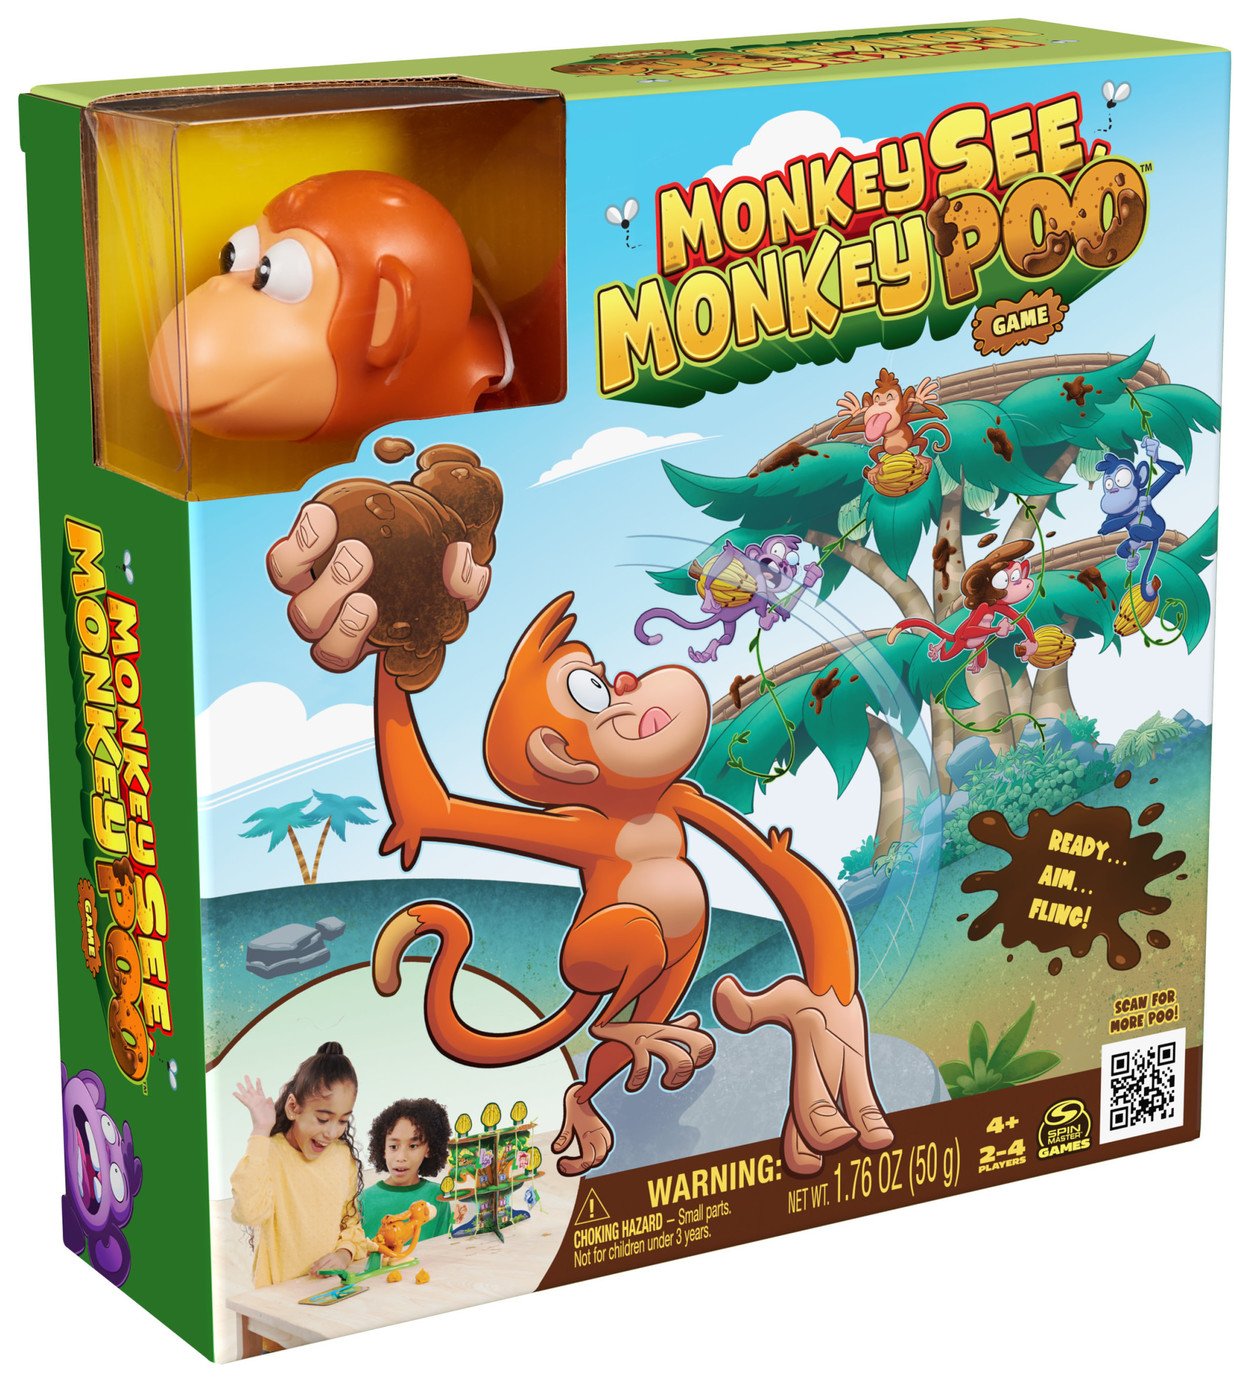 Monkey See Monkey Poo Game